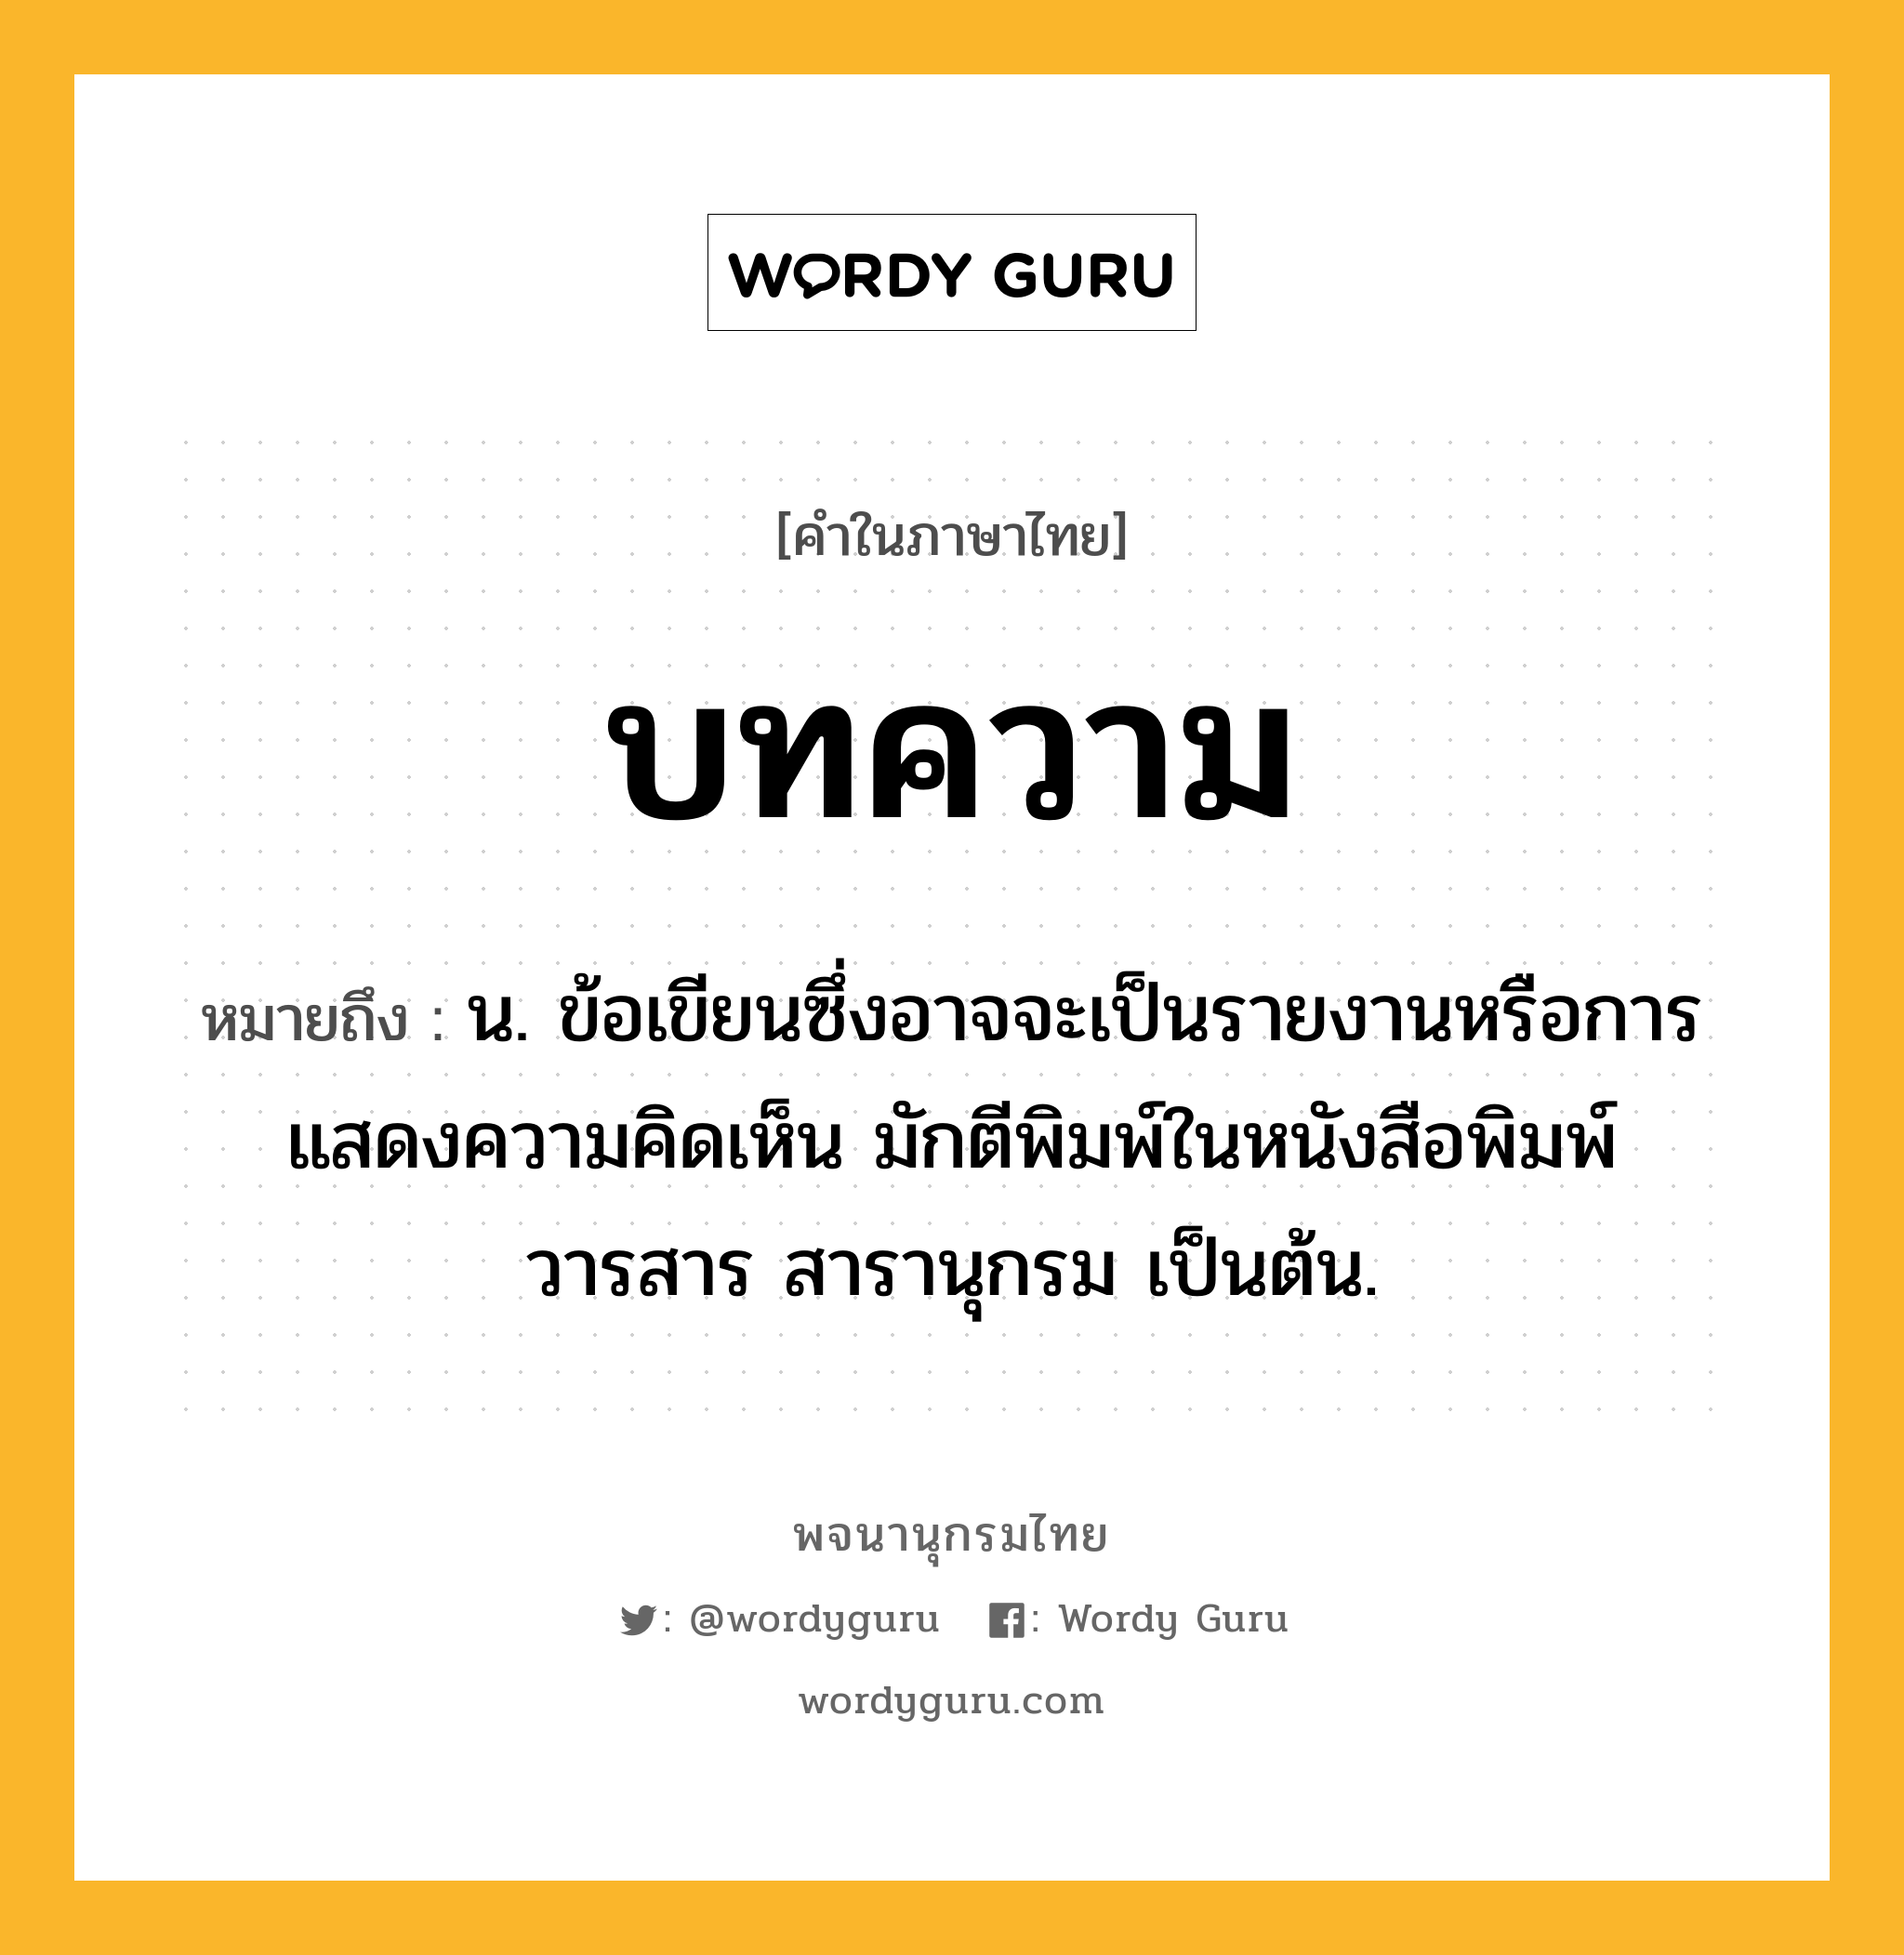 บทความ ความหมาย หมายถึงอะไร?, คำในภาษาไทย บทความ หมายถึง น. ข้อเขียนซึ่งอาจจะเป็นรายงานหรือการแสดงความคิดเห็น มักตีพิมพ์ในหนังสือพิมพ์ วารสาร สารานุกรม เป็นต้น.